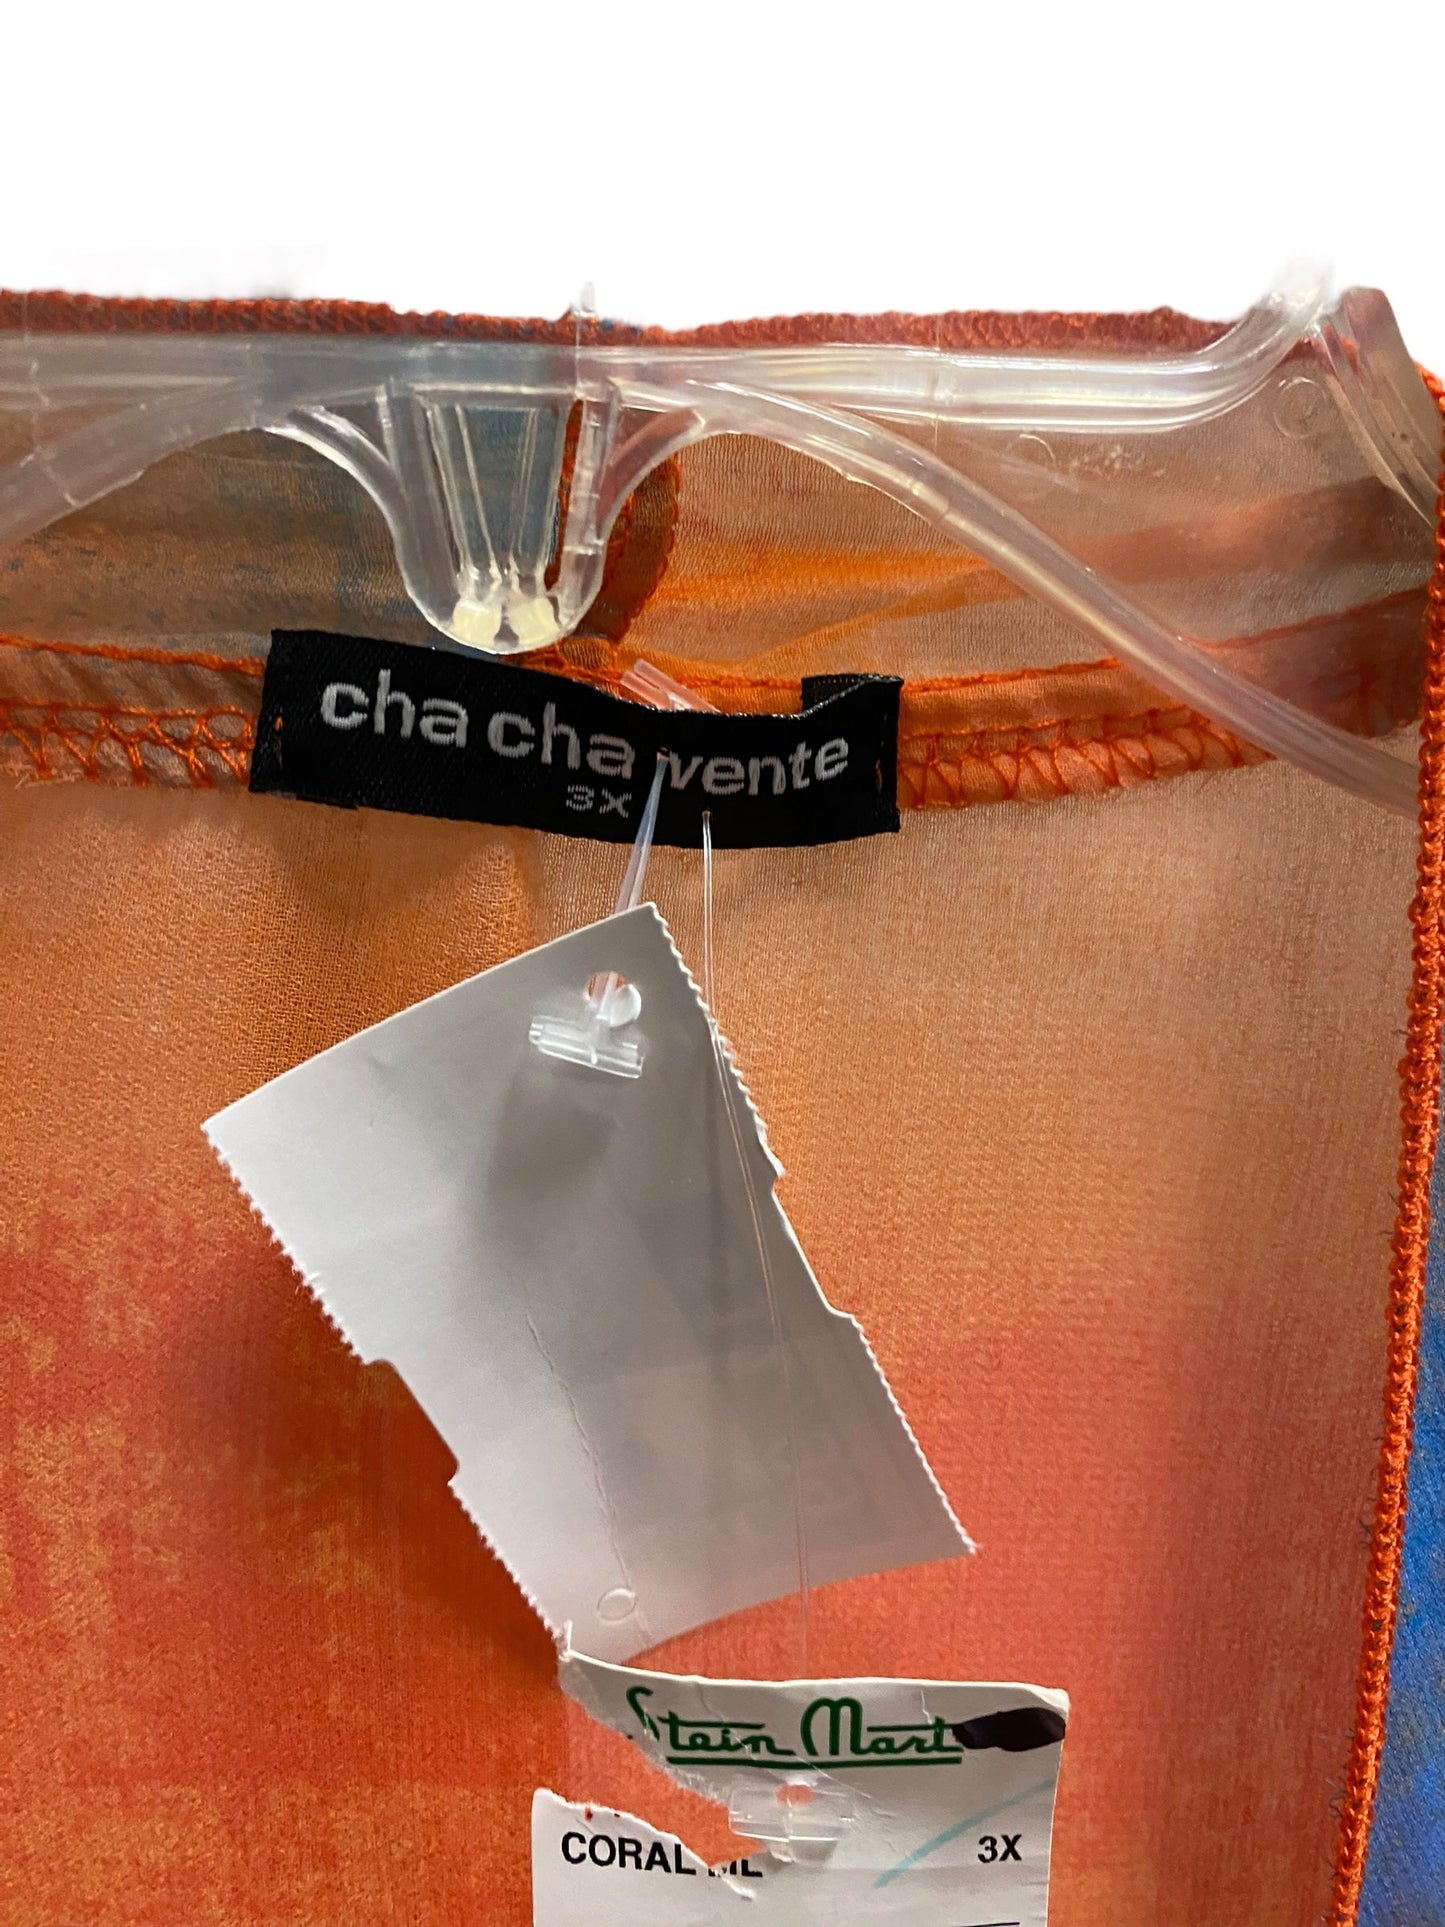 Multi-colored Swimwear Cover-up Cha Cha Vente, Size 3x